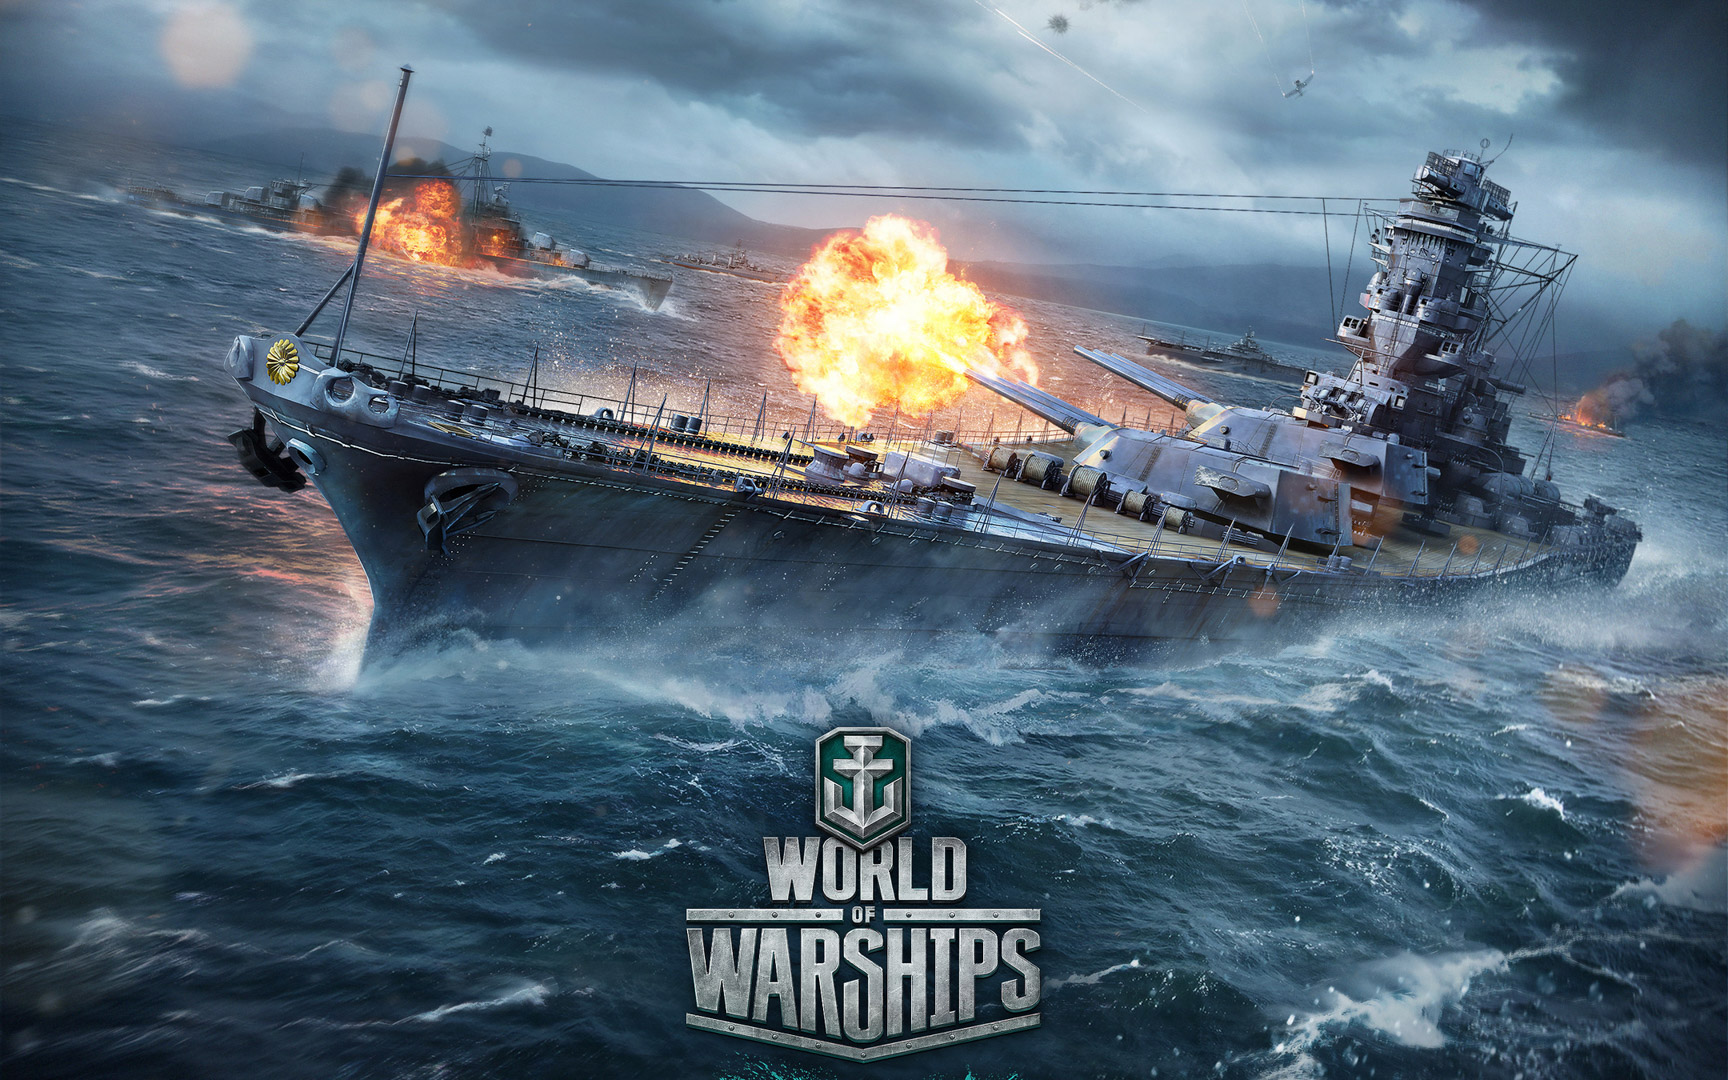 à¸à¸¥à¸à¸²à¸£à¸à¹à¸à¸«à¸²à¸£à¸¹à¸à¸ à¸²à¸à¸ªà¸³à¸«à¸£à¸±à¸ World of Warships